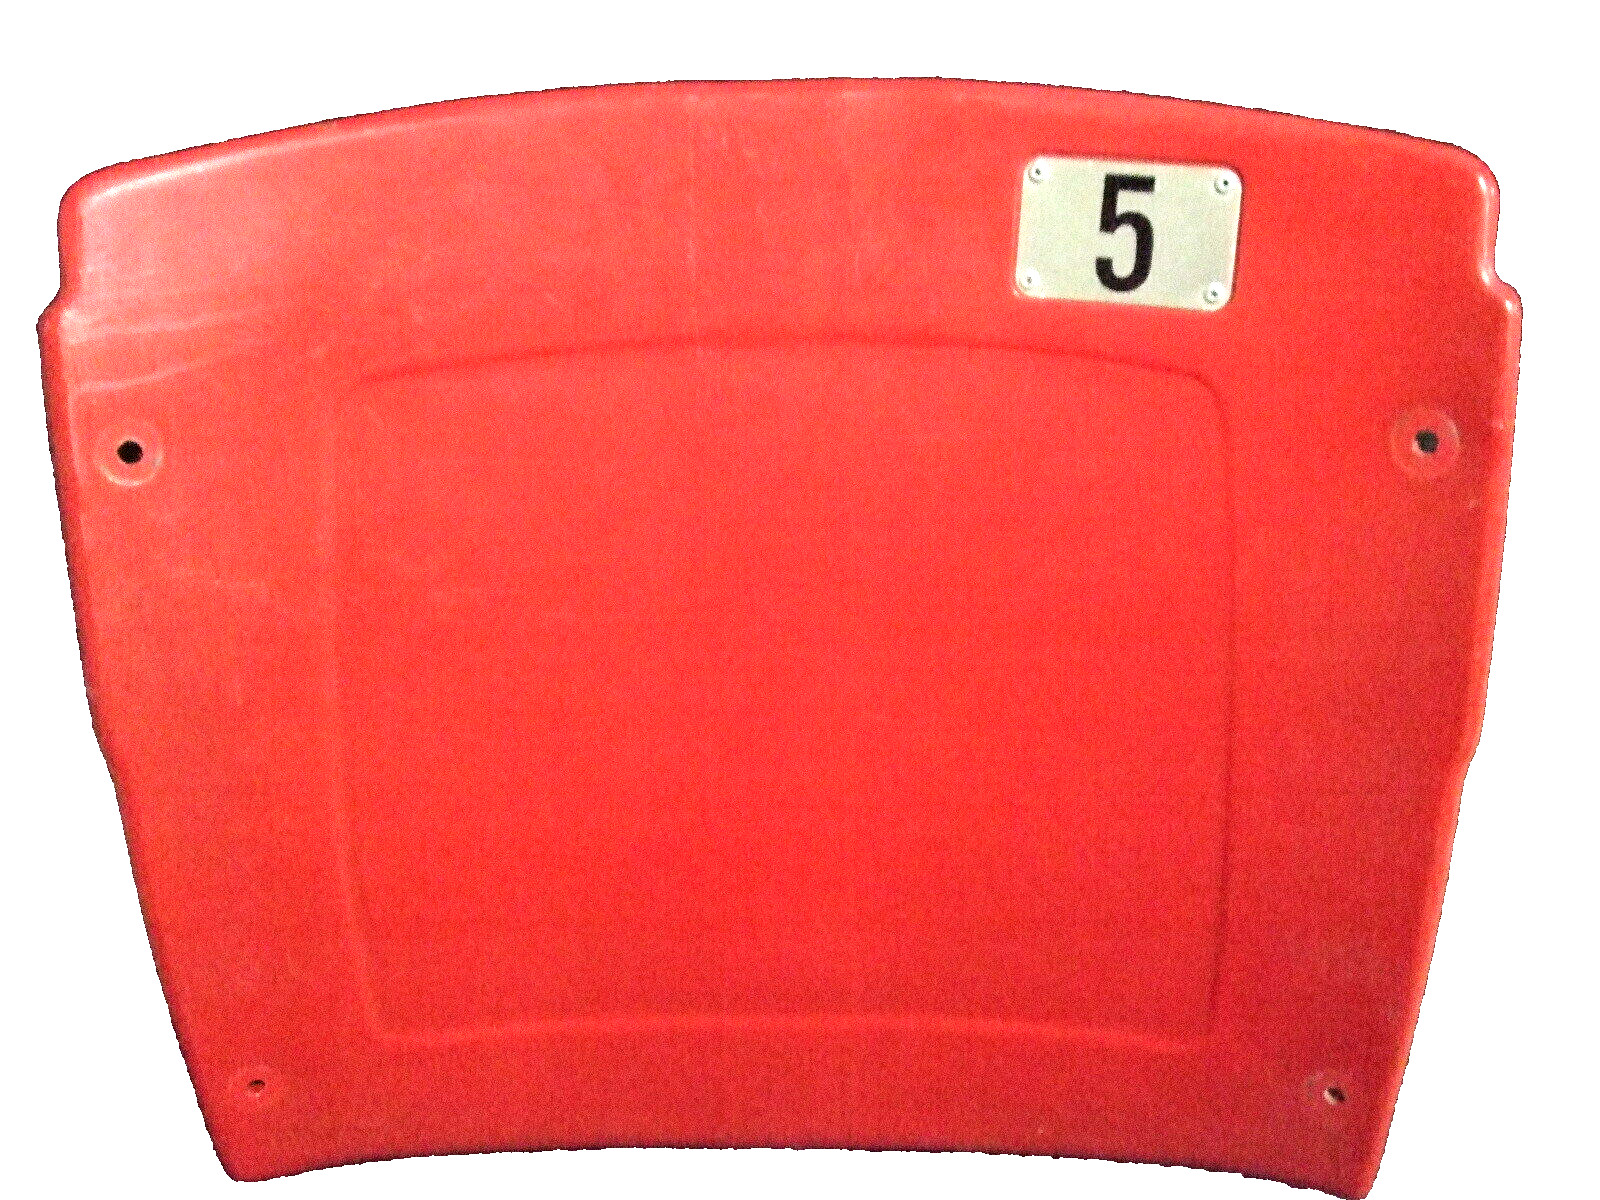 Busch Stadium seat back #5 Albert Pujols St Louis Cardinals  